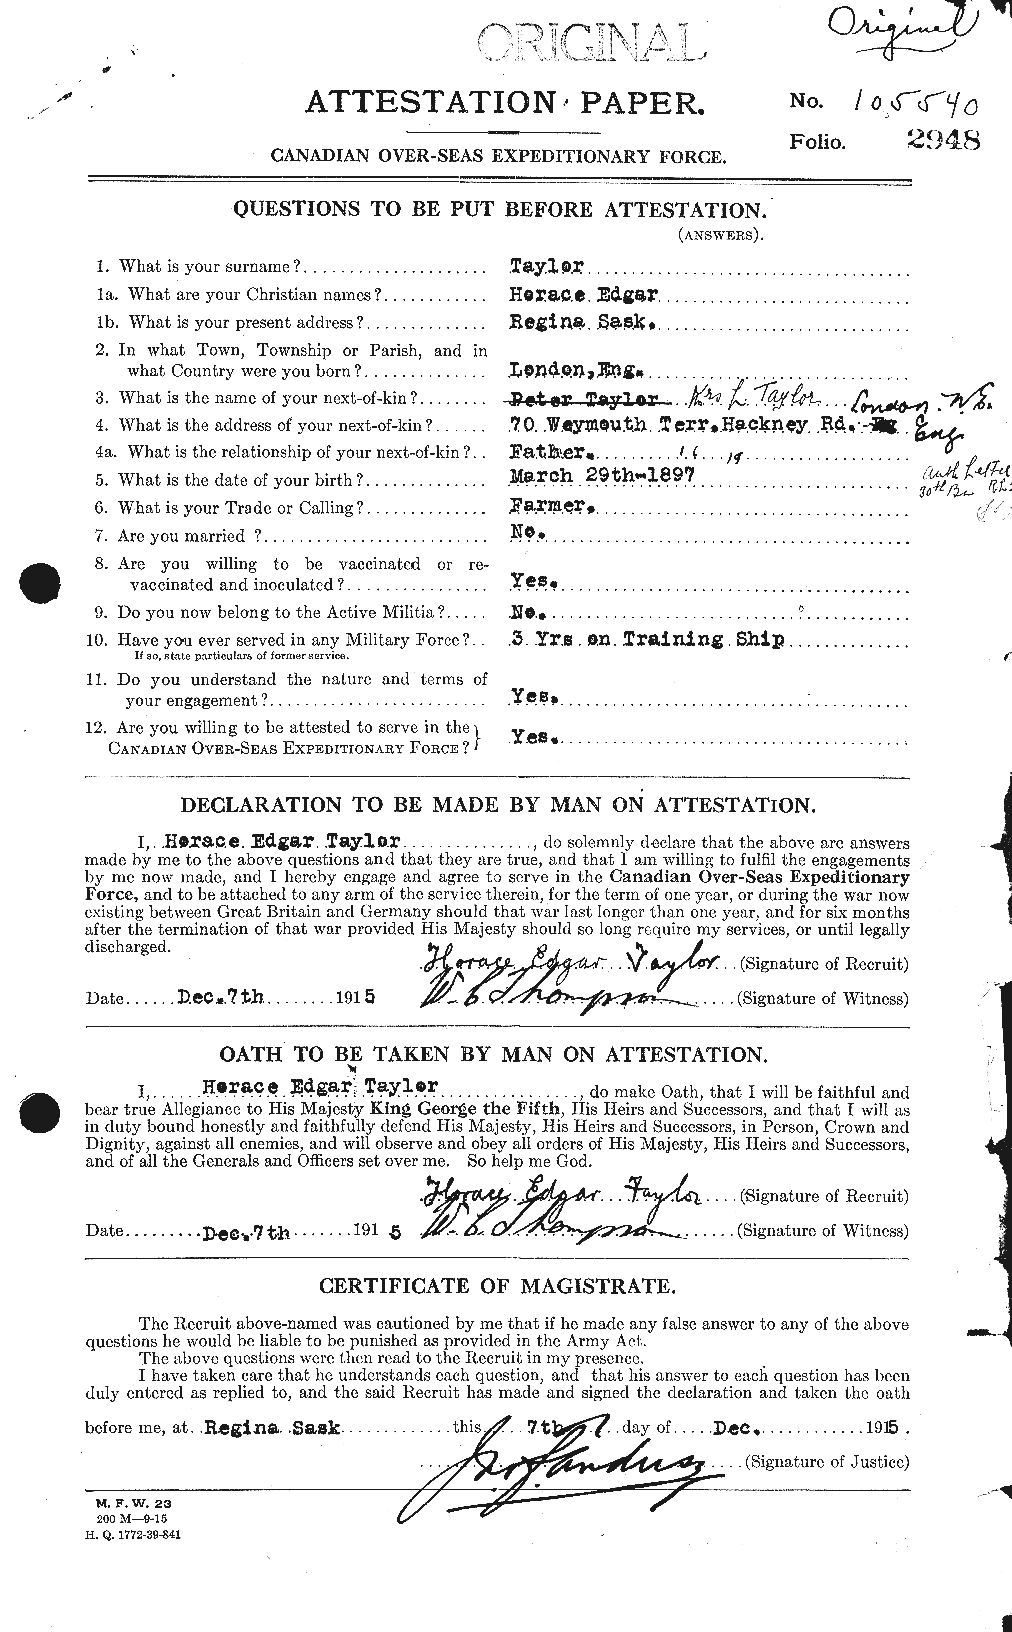 Dossiers du Personnel de la Première Guerre mondiale - CEC 626593a